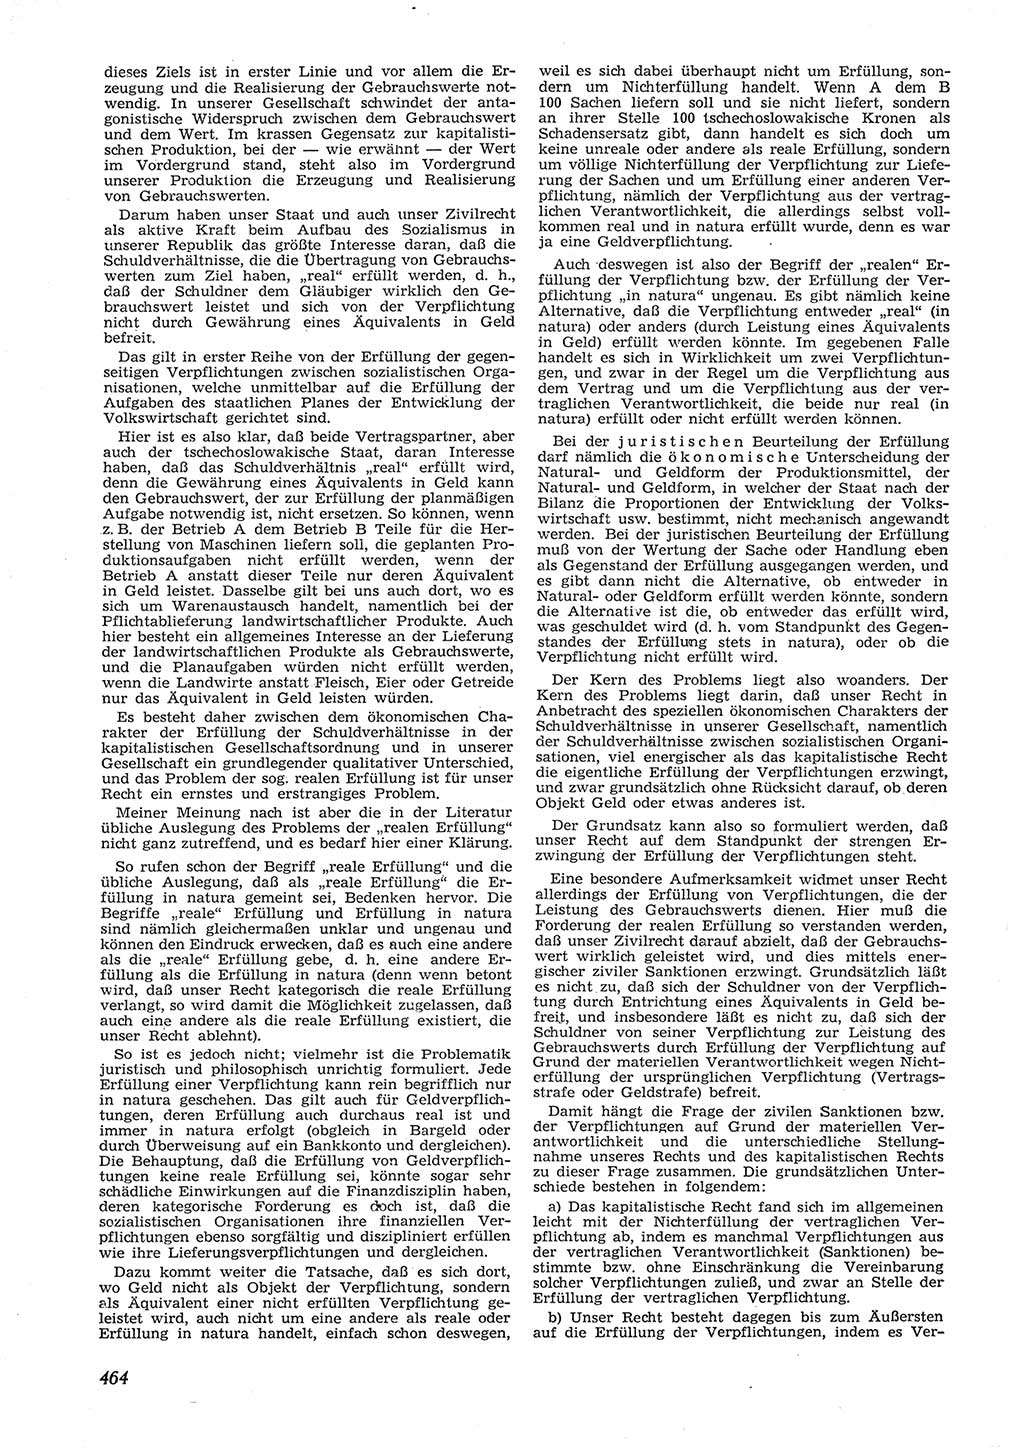 Neue Justiz (NJ), Zeitschrift für Recht und Rechtswissenschaft [Deutsche Demokratische Republik (DDR)], 9. Jahrgang 1955, Seite 464 (NJ DDR 1955, S. 464)